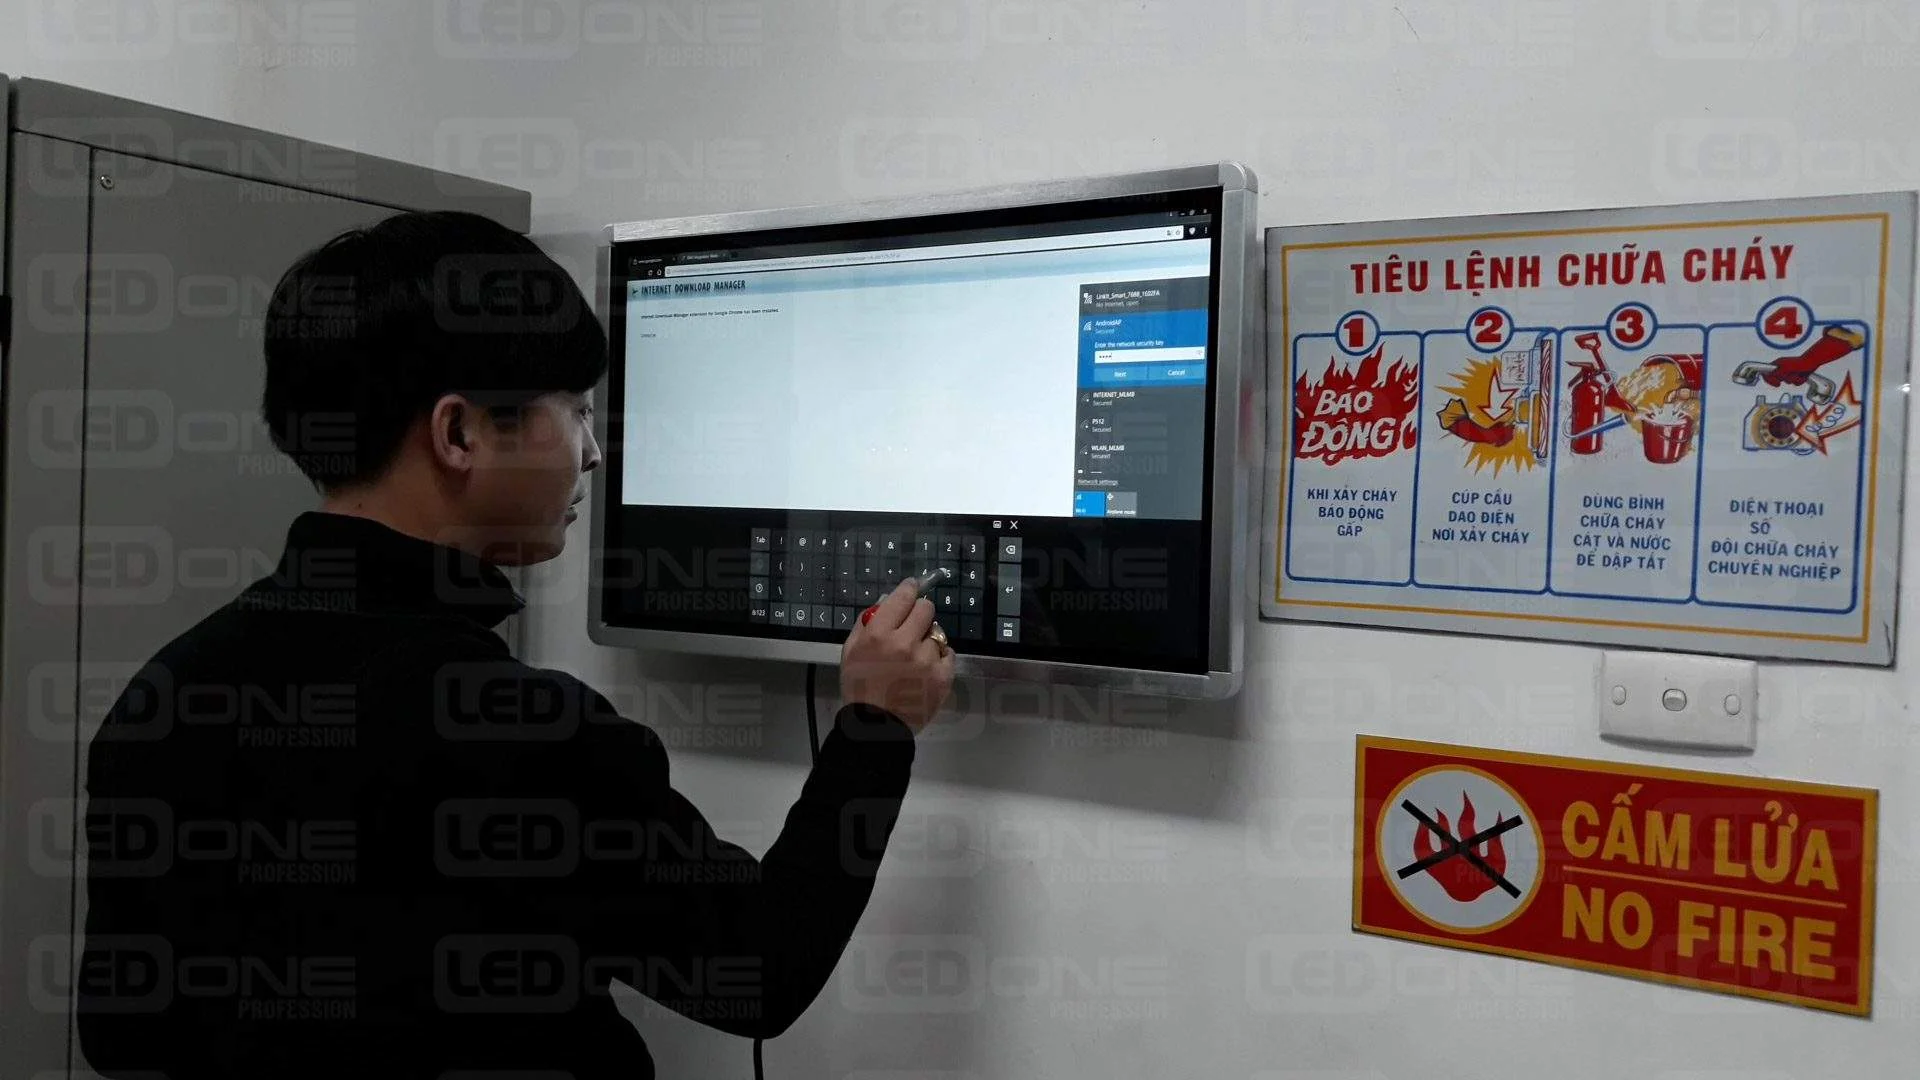 Màn hình cảm ứng LCD SAMSUNG / LG treo tường 32 inch  